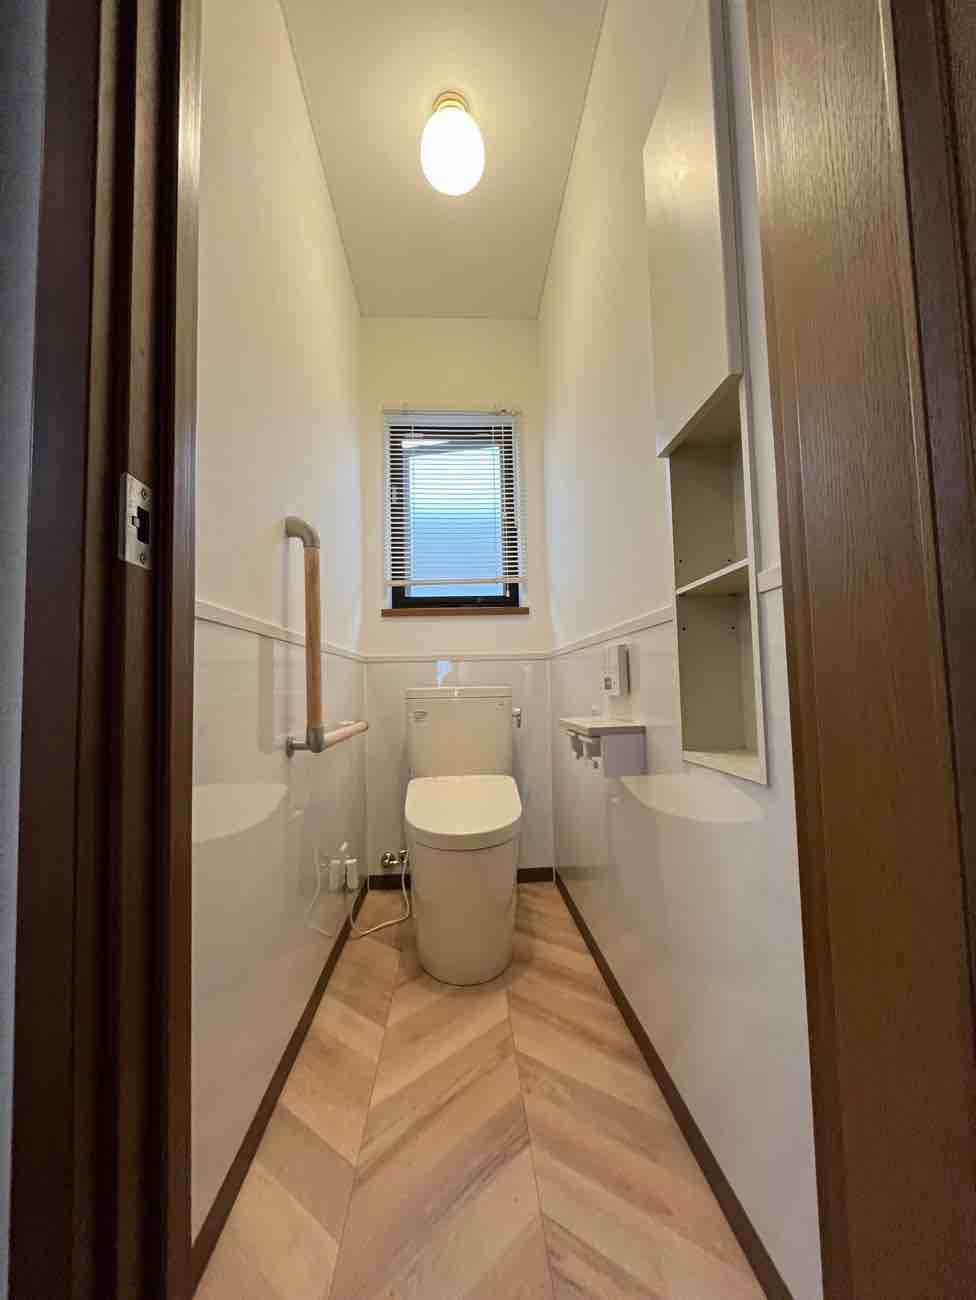 【埼玉県越谷市】O様邸トイレ内装工事が完了しました。TOTOピュアレストEX 画像